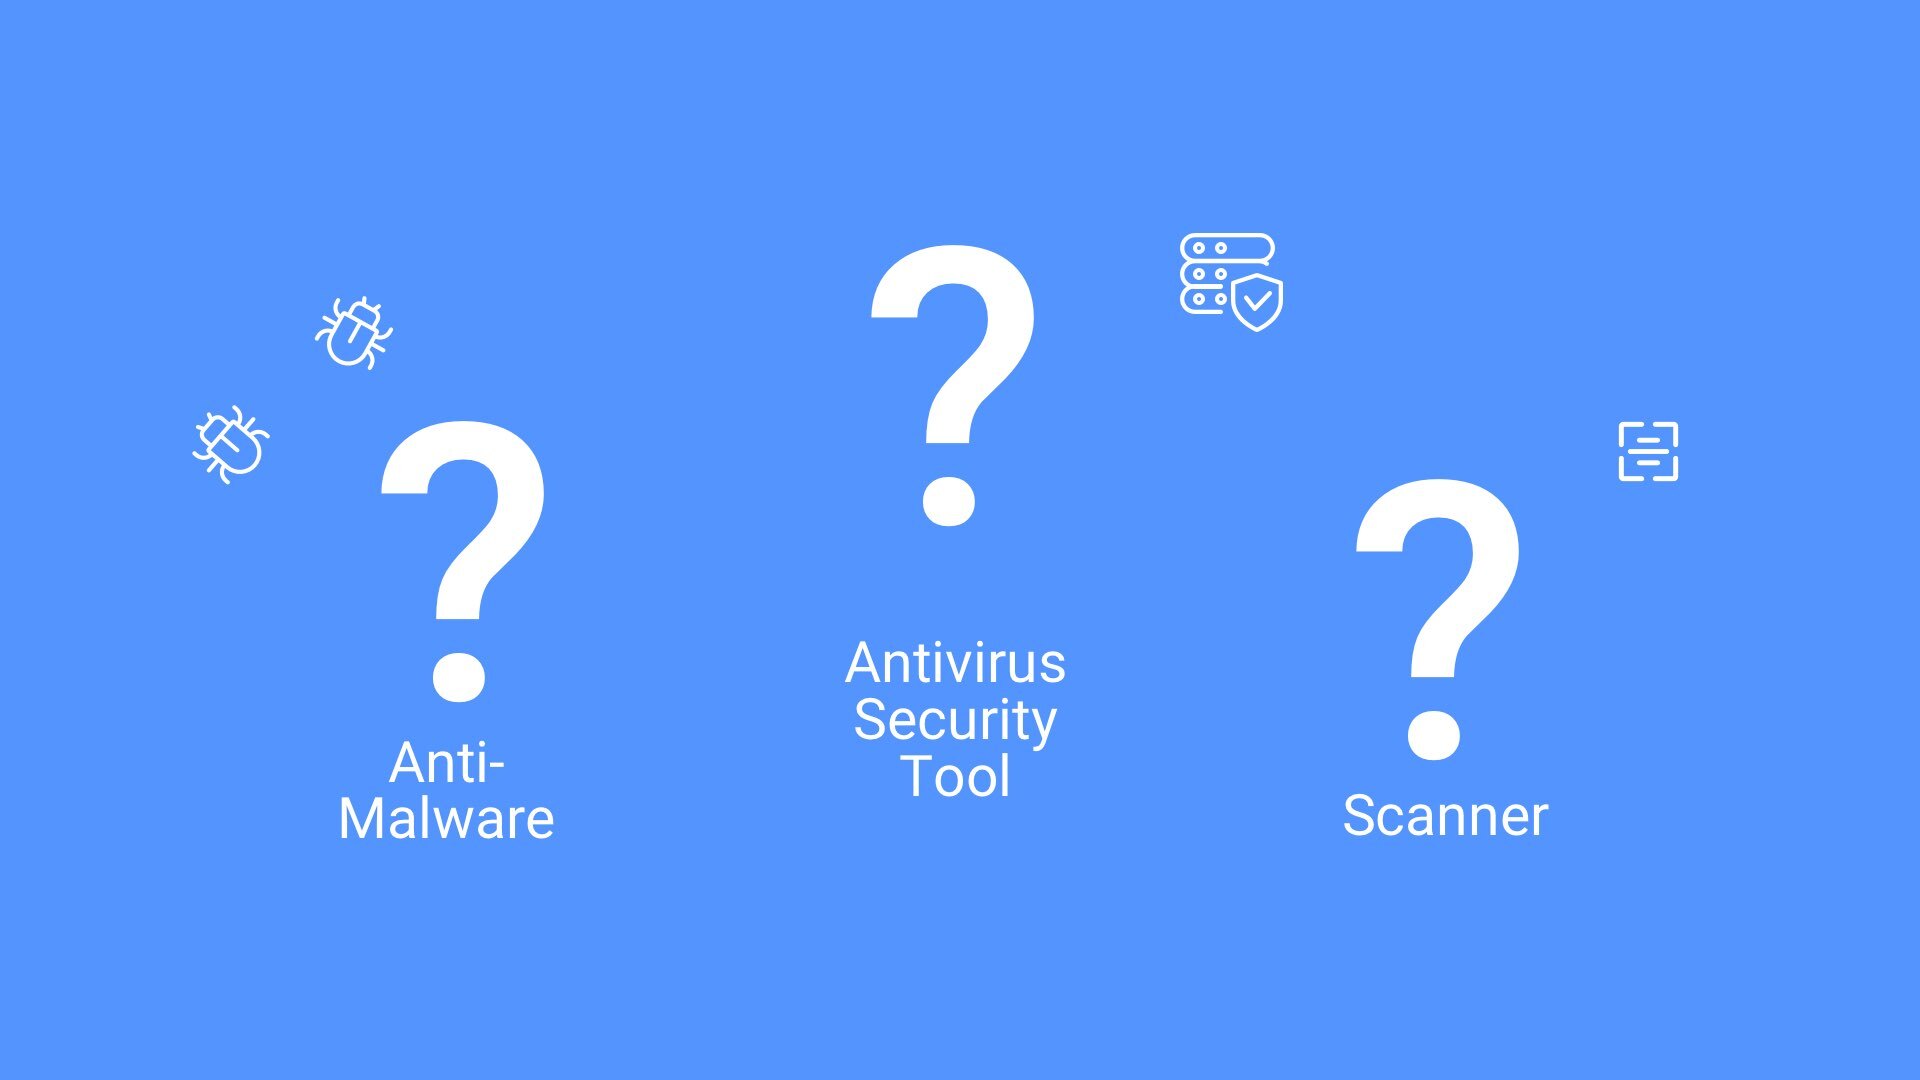 Antivirus scanner, anti-malware, antivirus program. What are they?